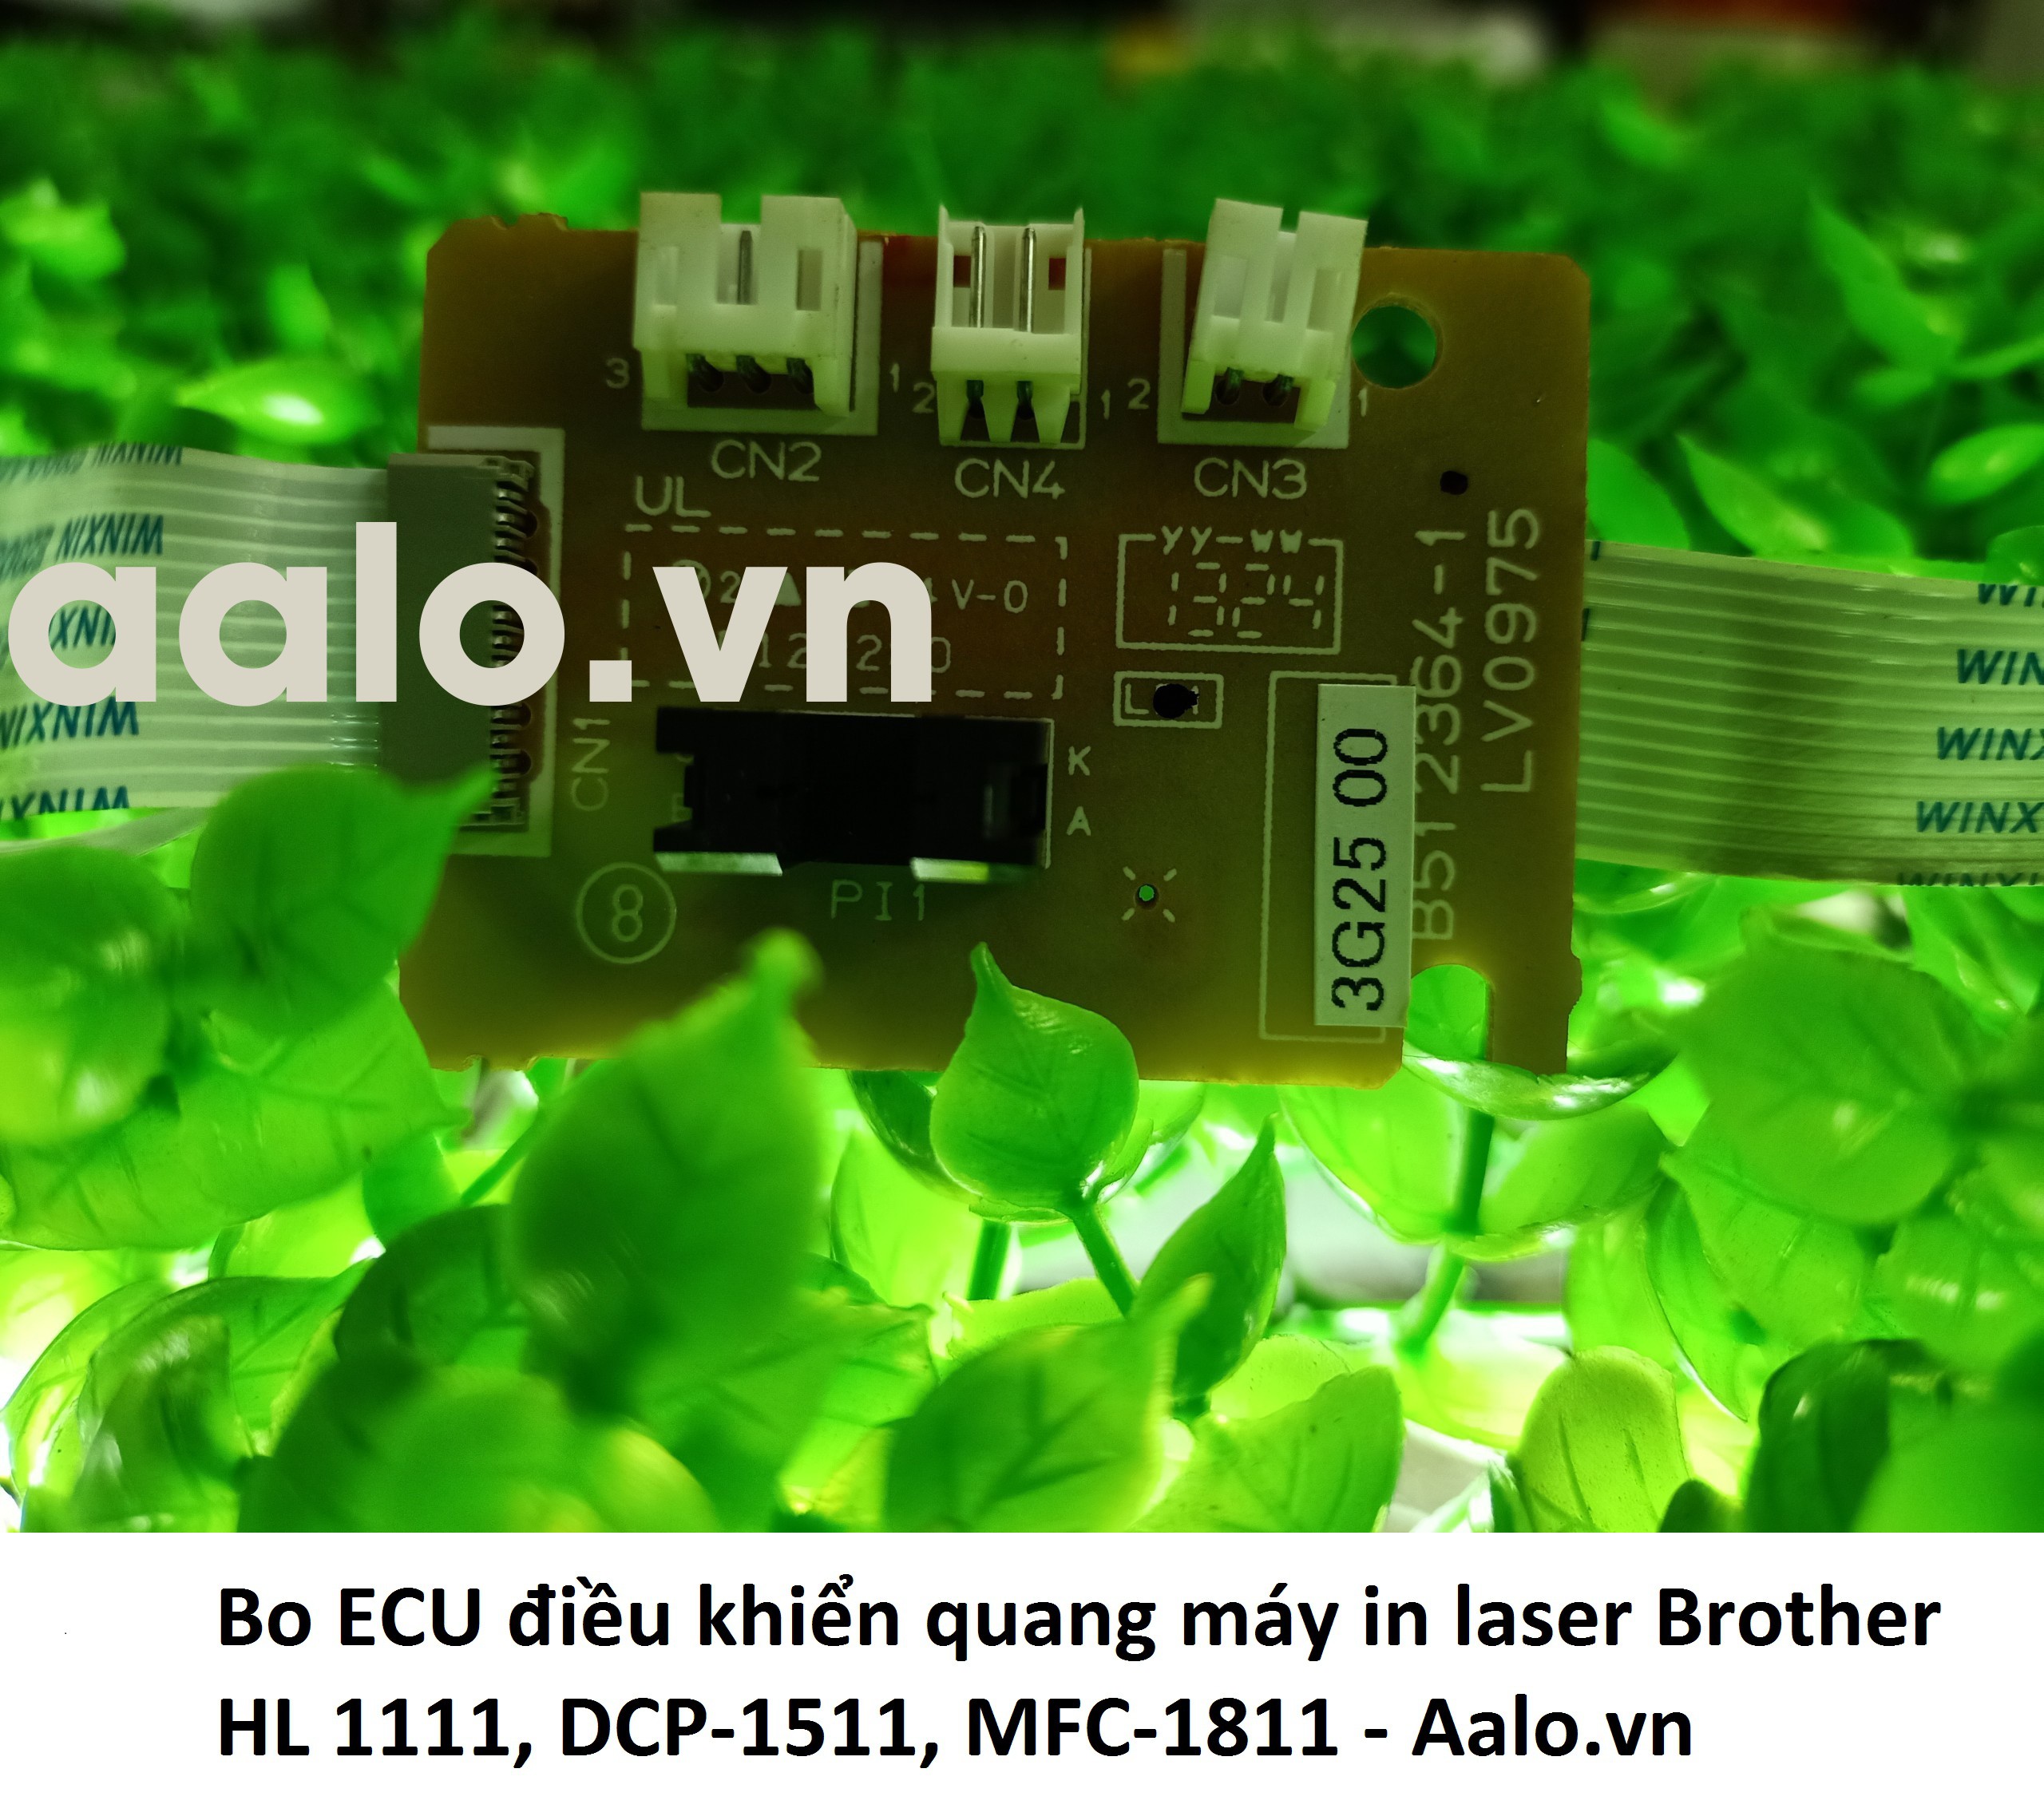 Bo ECU điều khiển quang máy in laser Brother HL 1111, DCP-1511, MFC-1811